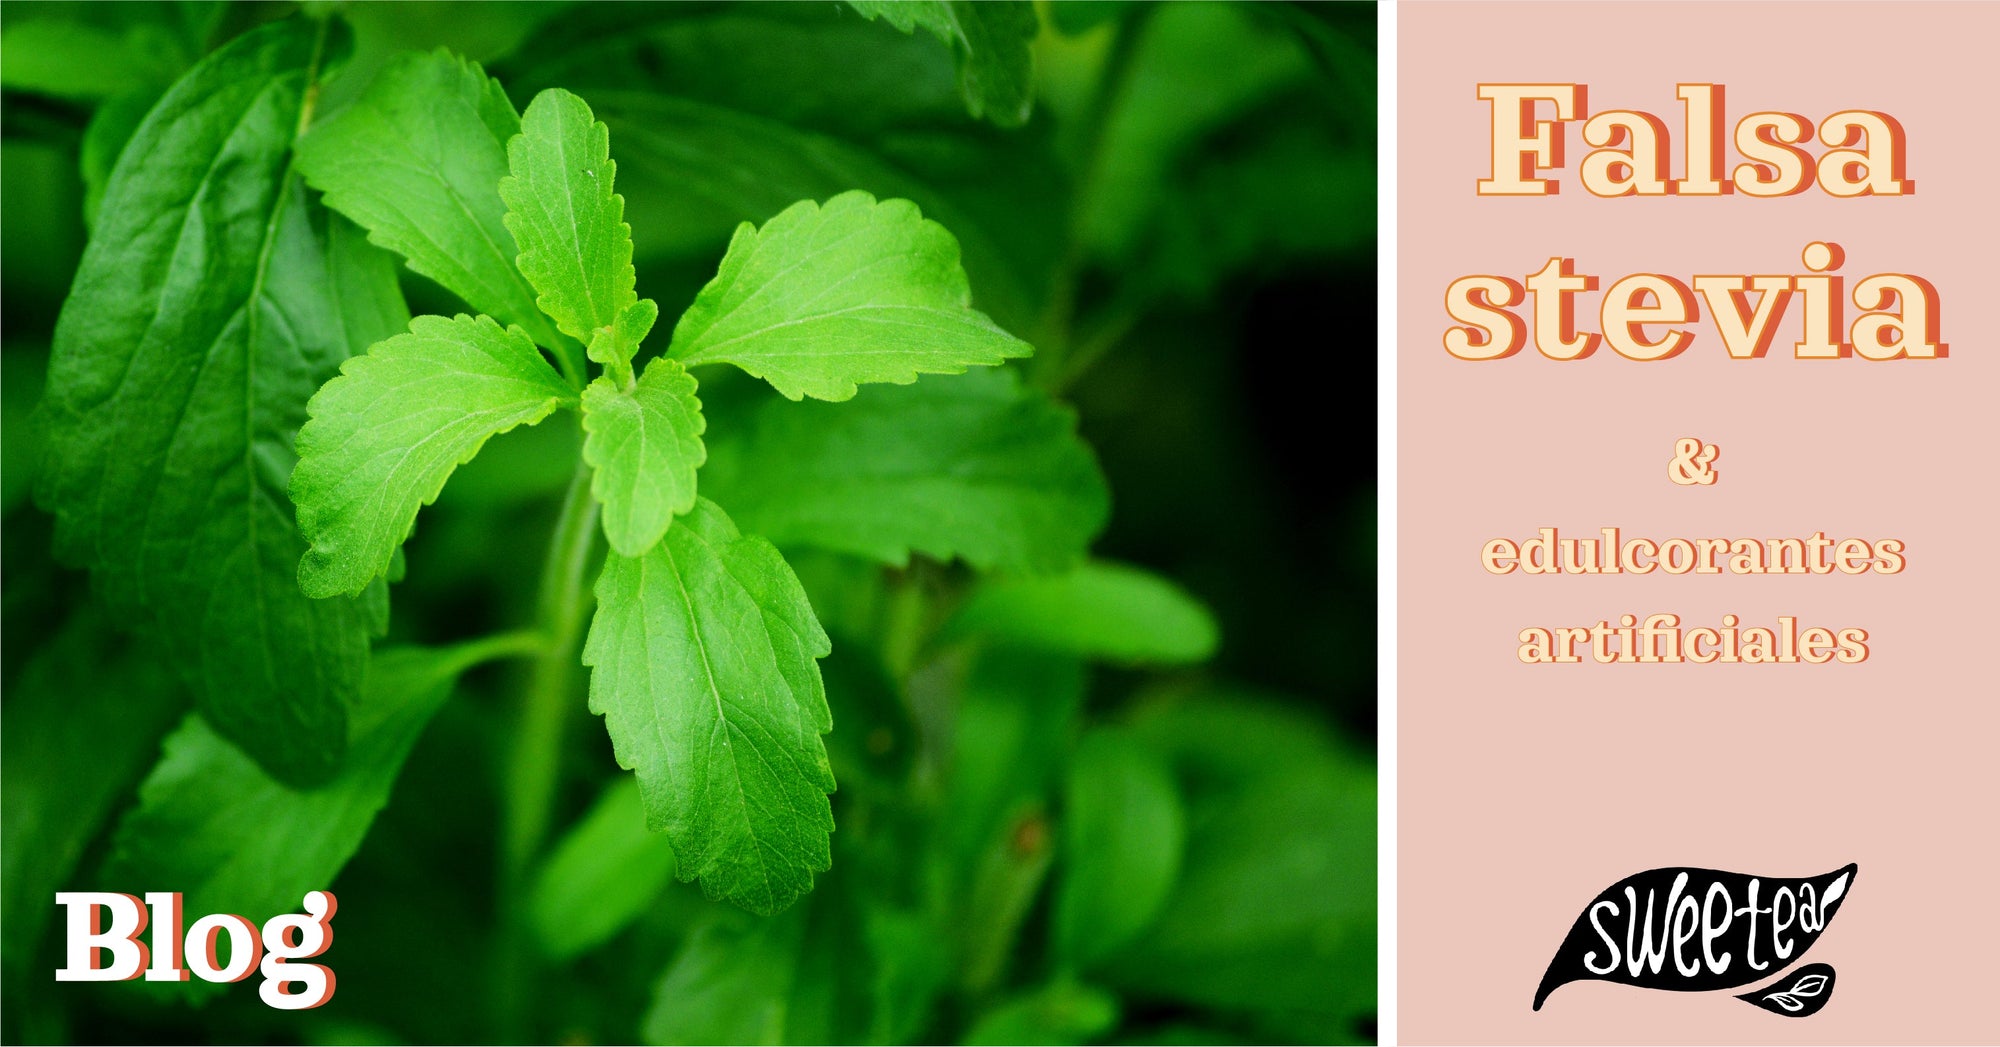 Endulzantes artificiales: El truco de la falsa stevia